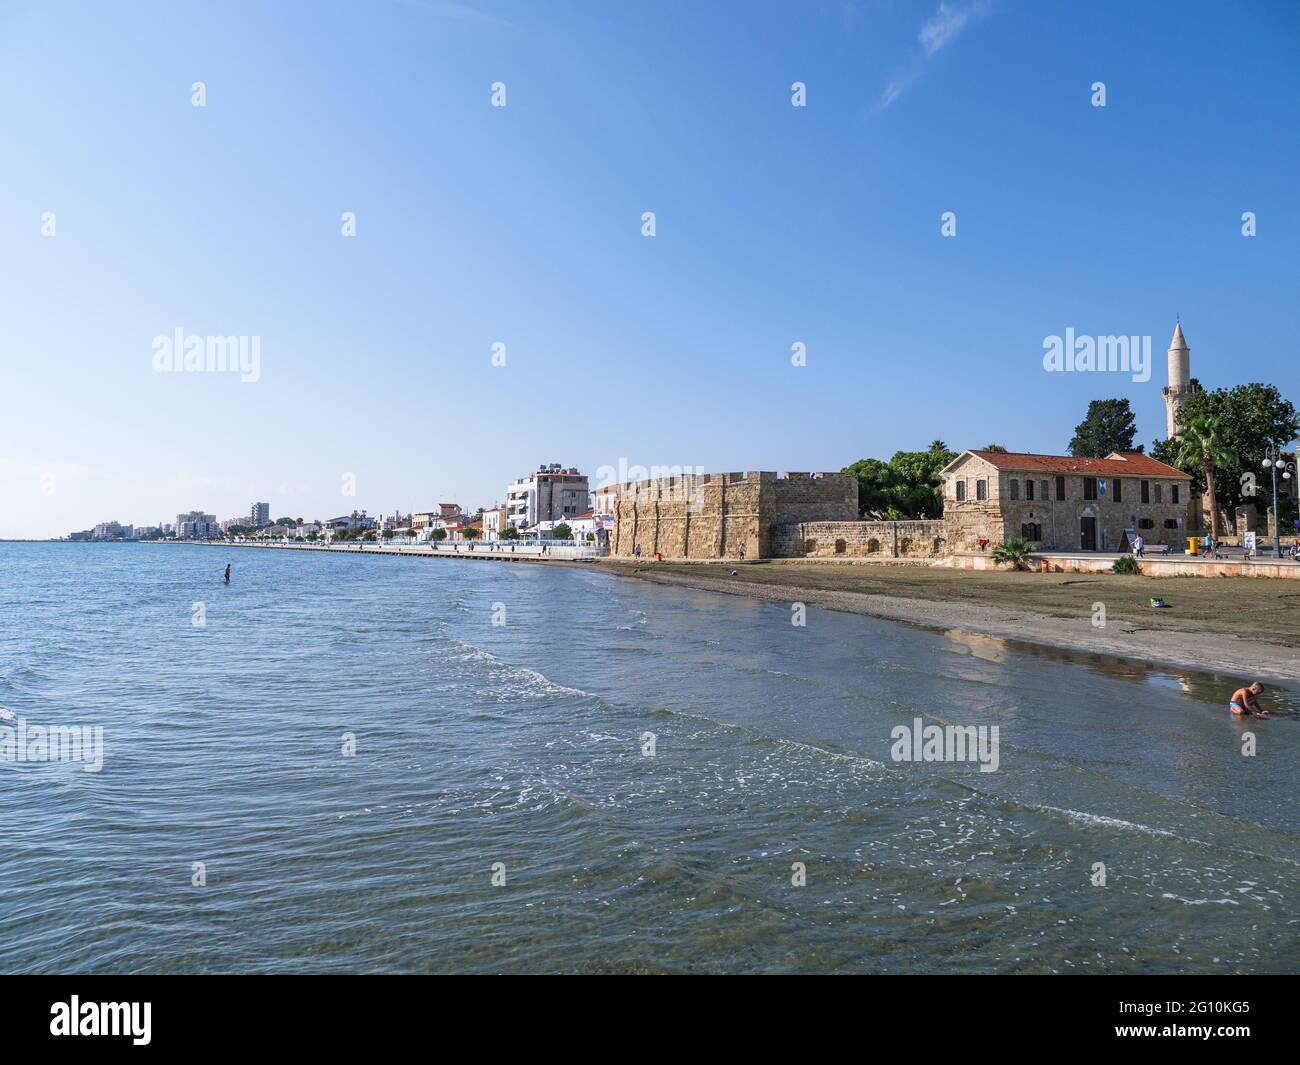 Blick vom Pier auf die alte Festung Larnaca, den Turm der Djami Kebir Moschee und den Strand mit vulkanischem Sand an einem sonnigen Tag in Zypern. Stockfoto